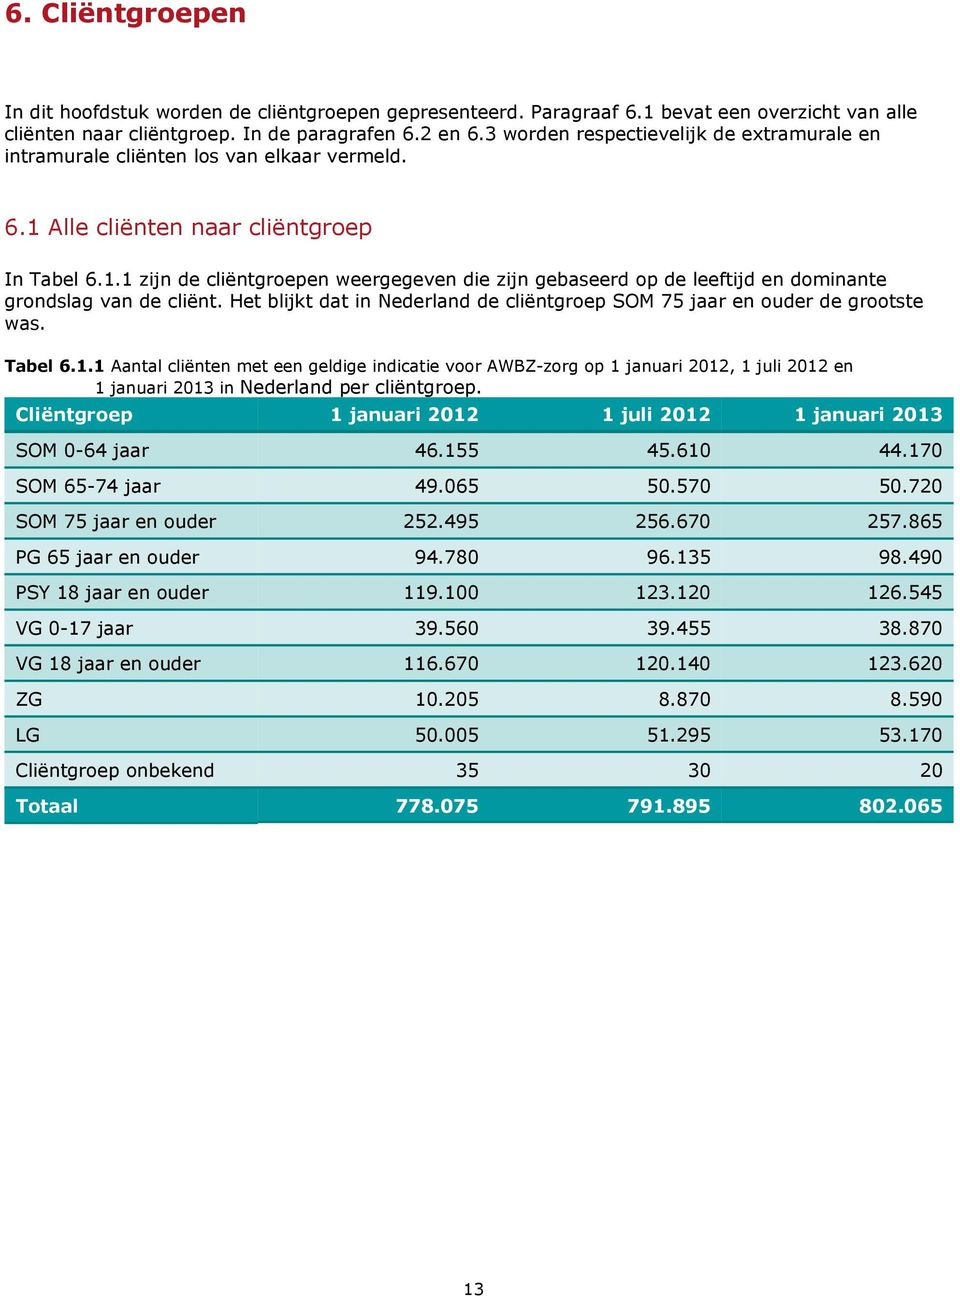 Het blijkt dat in Nederland de cliëntgroep SOM 75 jaar en de grootste was. Tabel 6.1.